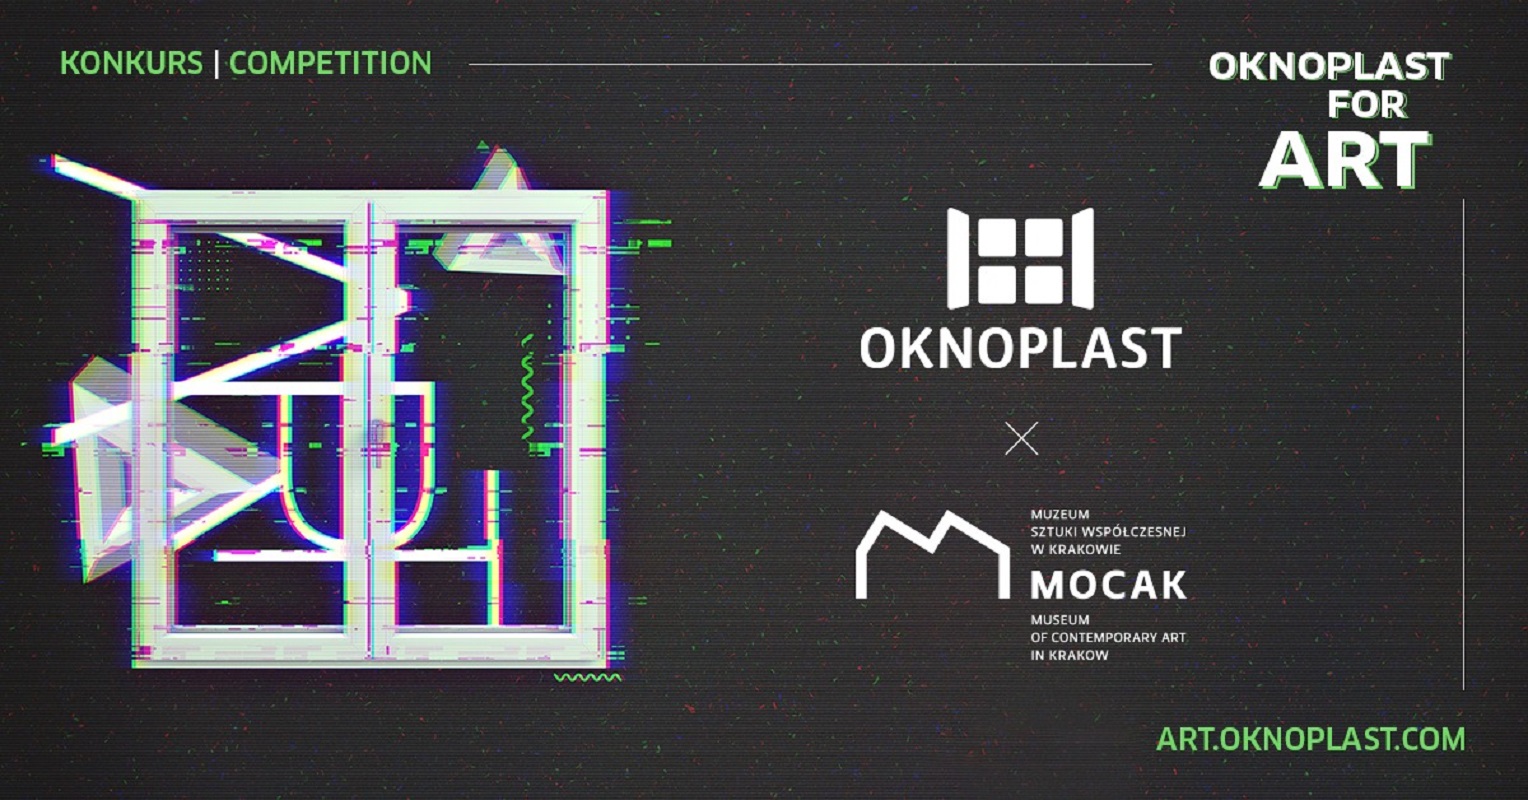 OKNOPLAST FOR ART – międzynarodowy konkurs artystyczny /OKNOPLAST i MOCAK